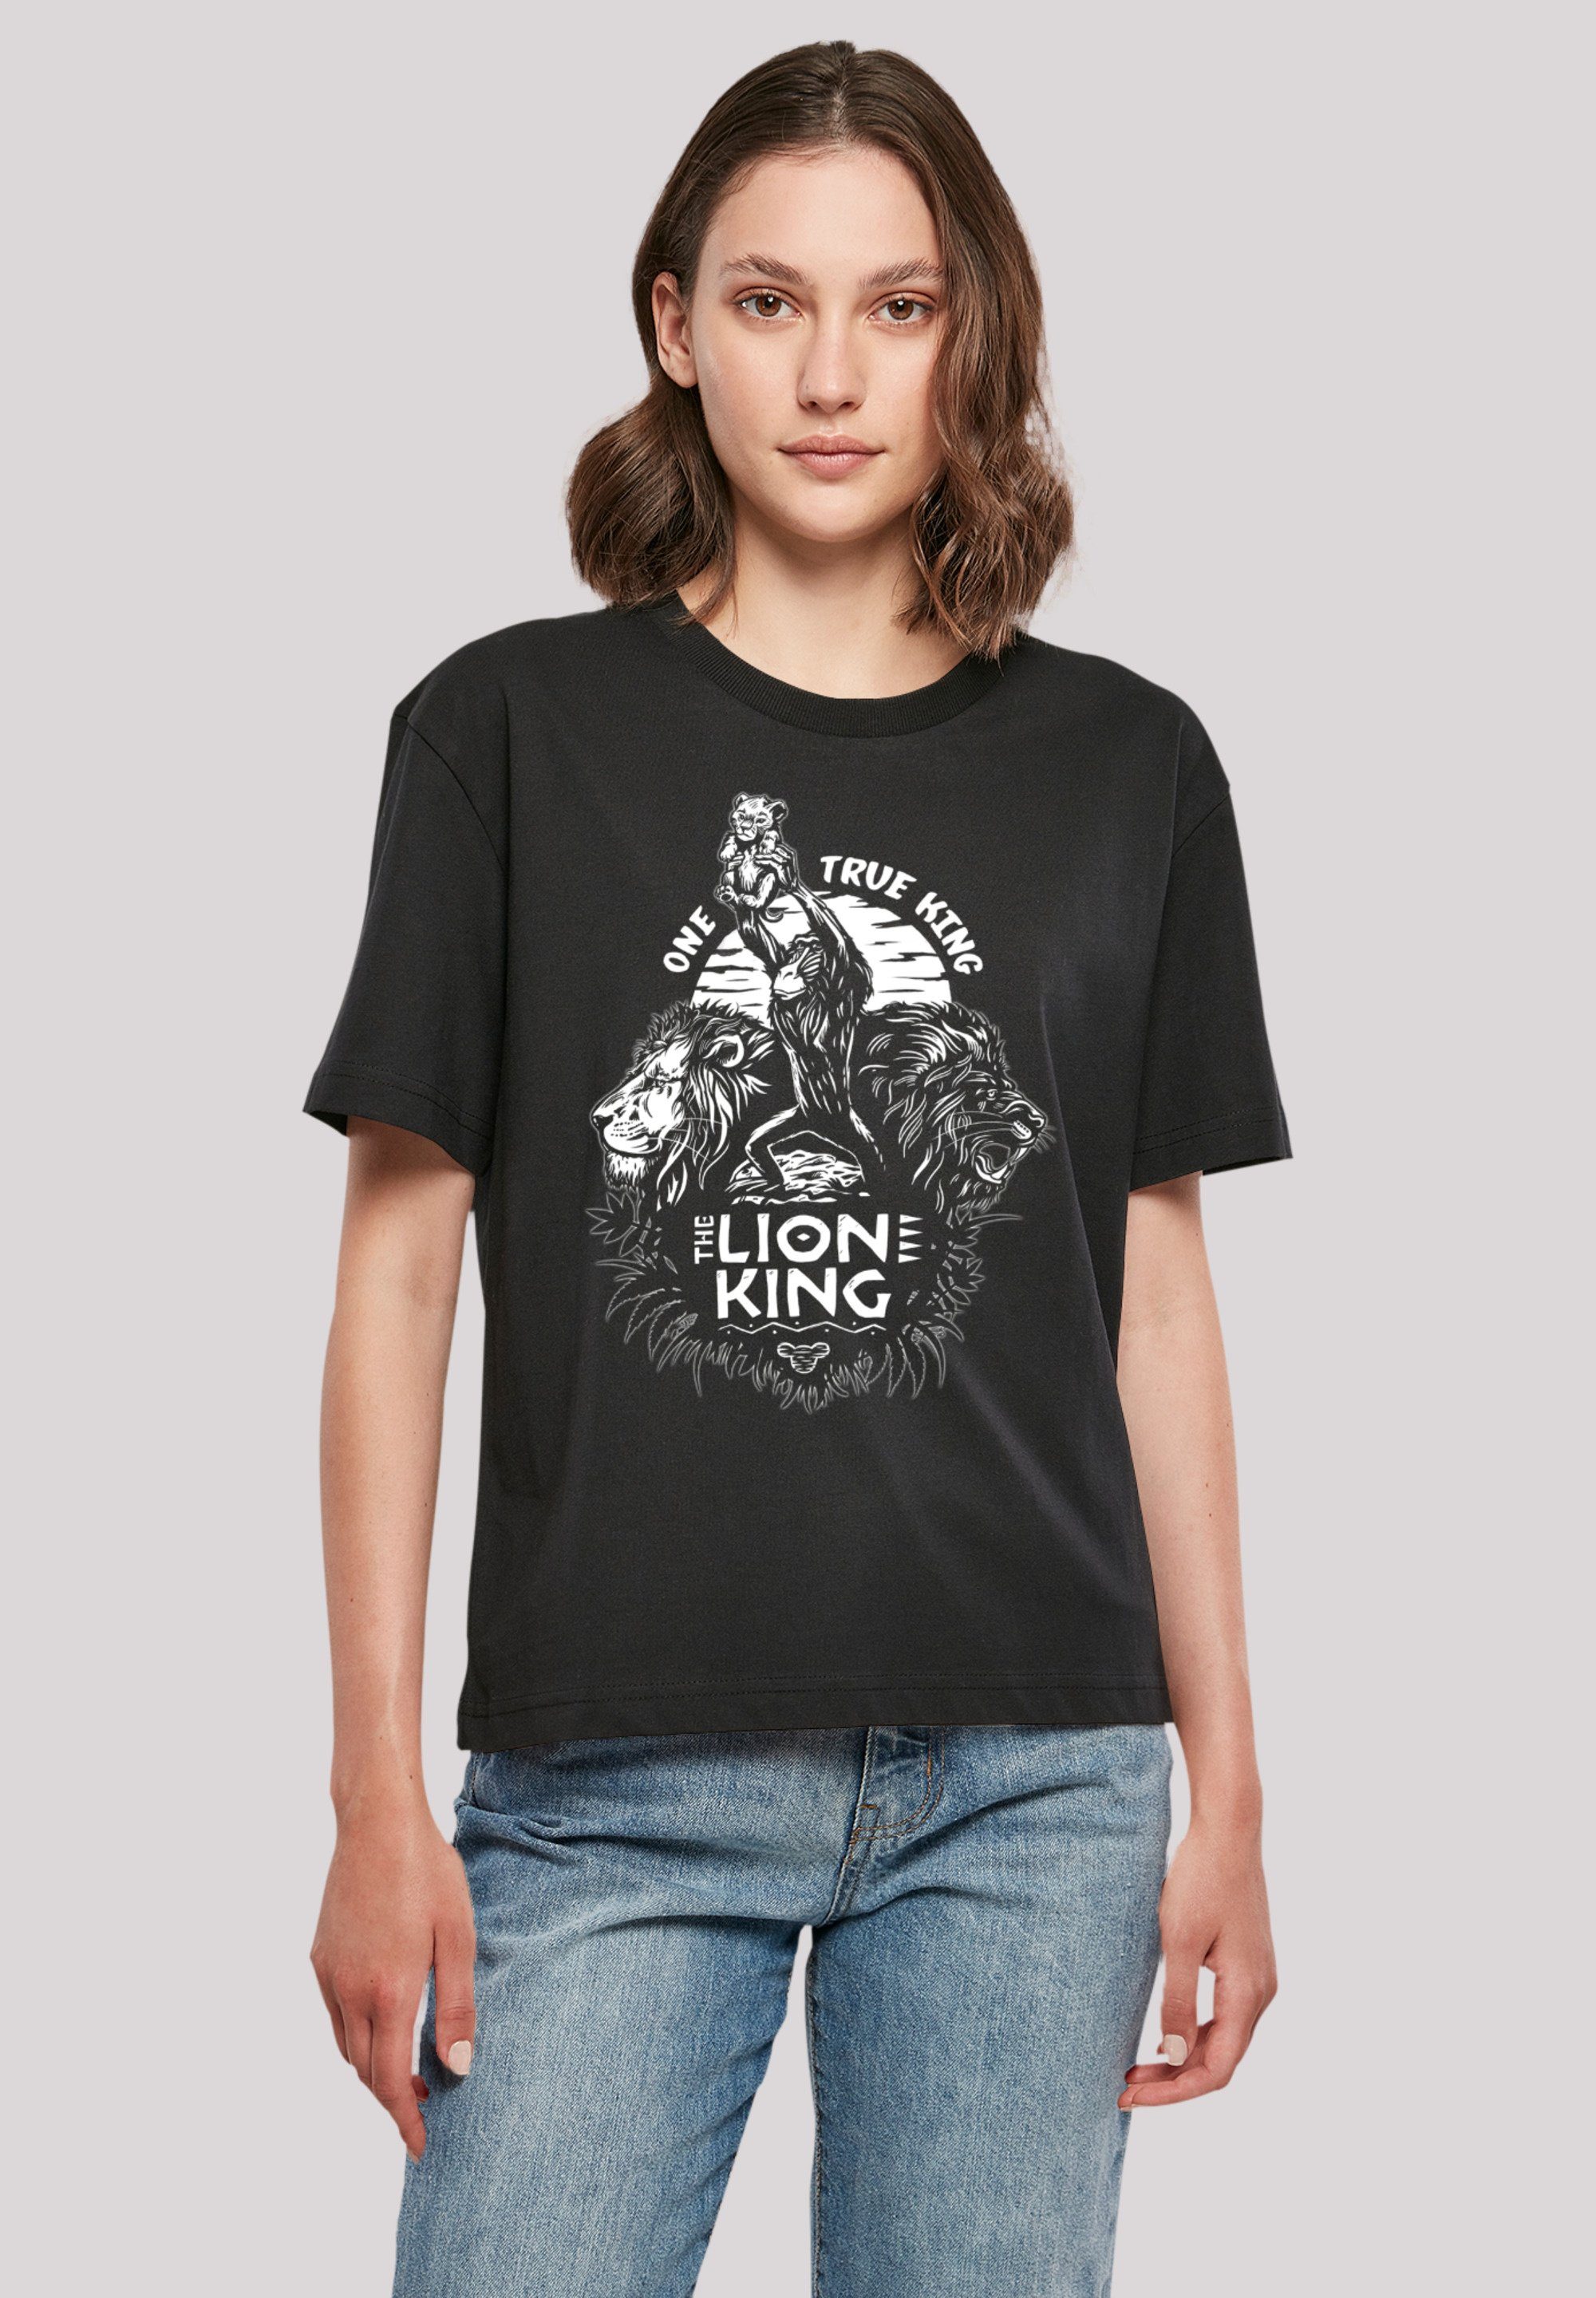 F4NT4STIC T-Shirt Disney König der Löwen One True King Premium Qualität